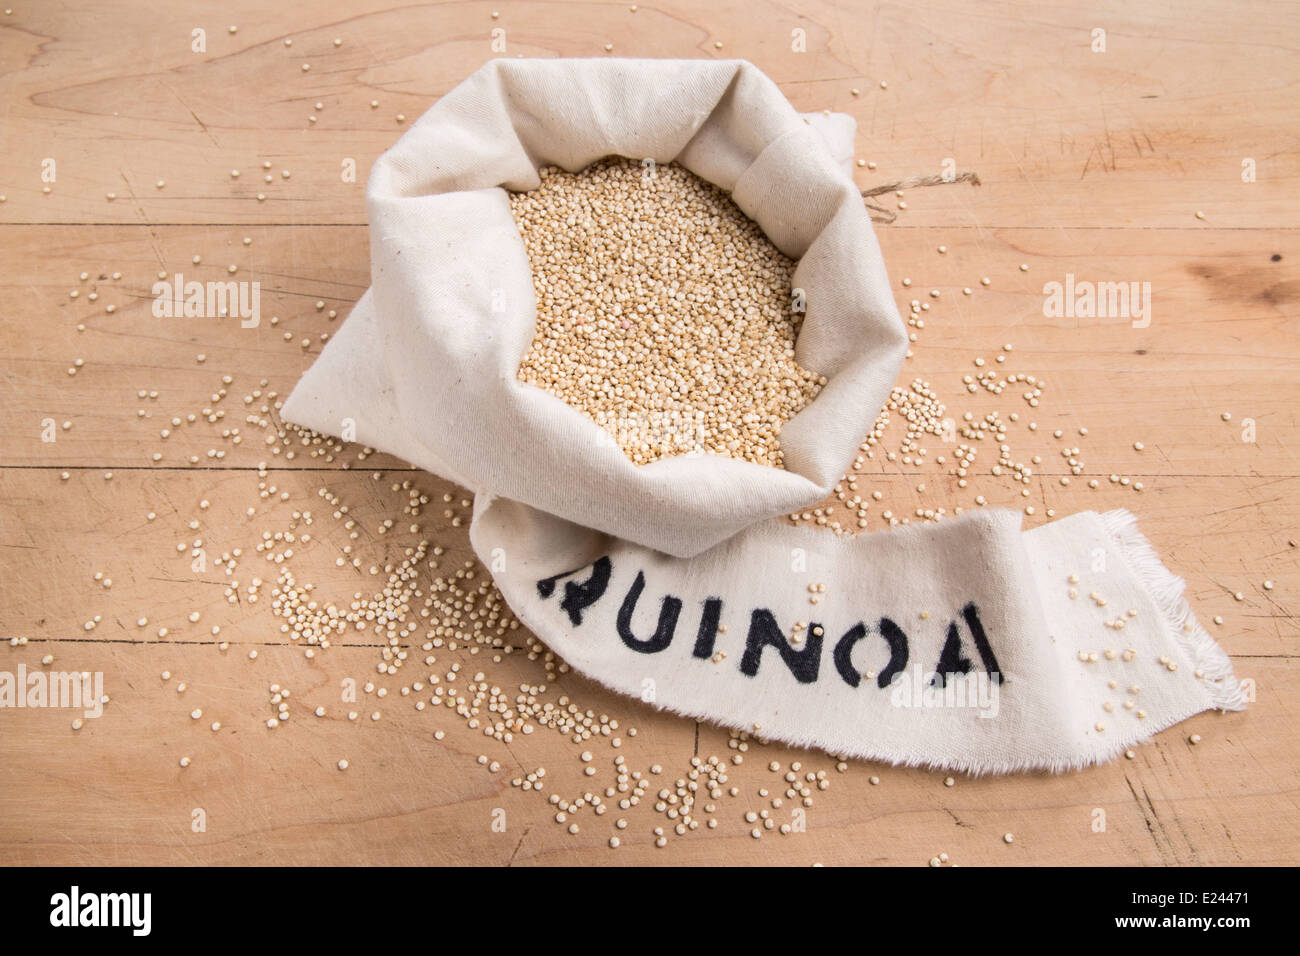 Les graines de quinoa dans un sac de crème avec une étiquette sur une planche en bois (19 de 24) Banque D'Images